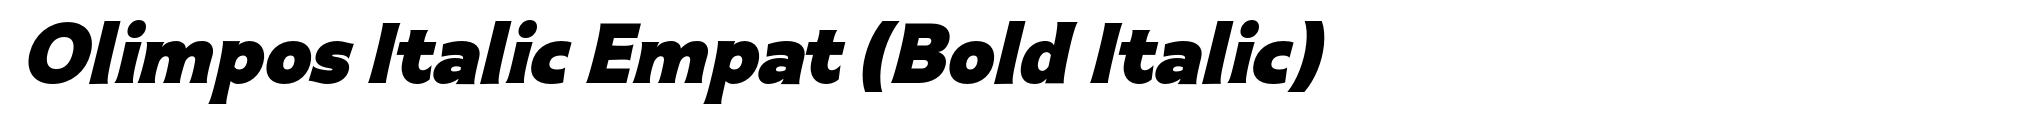 Olimpos Italic Empat (Bold Italic) image